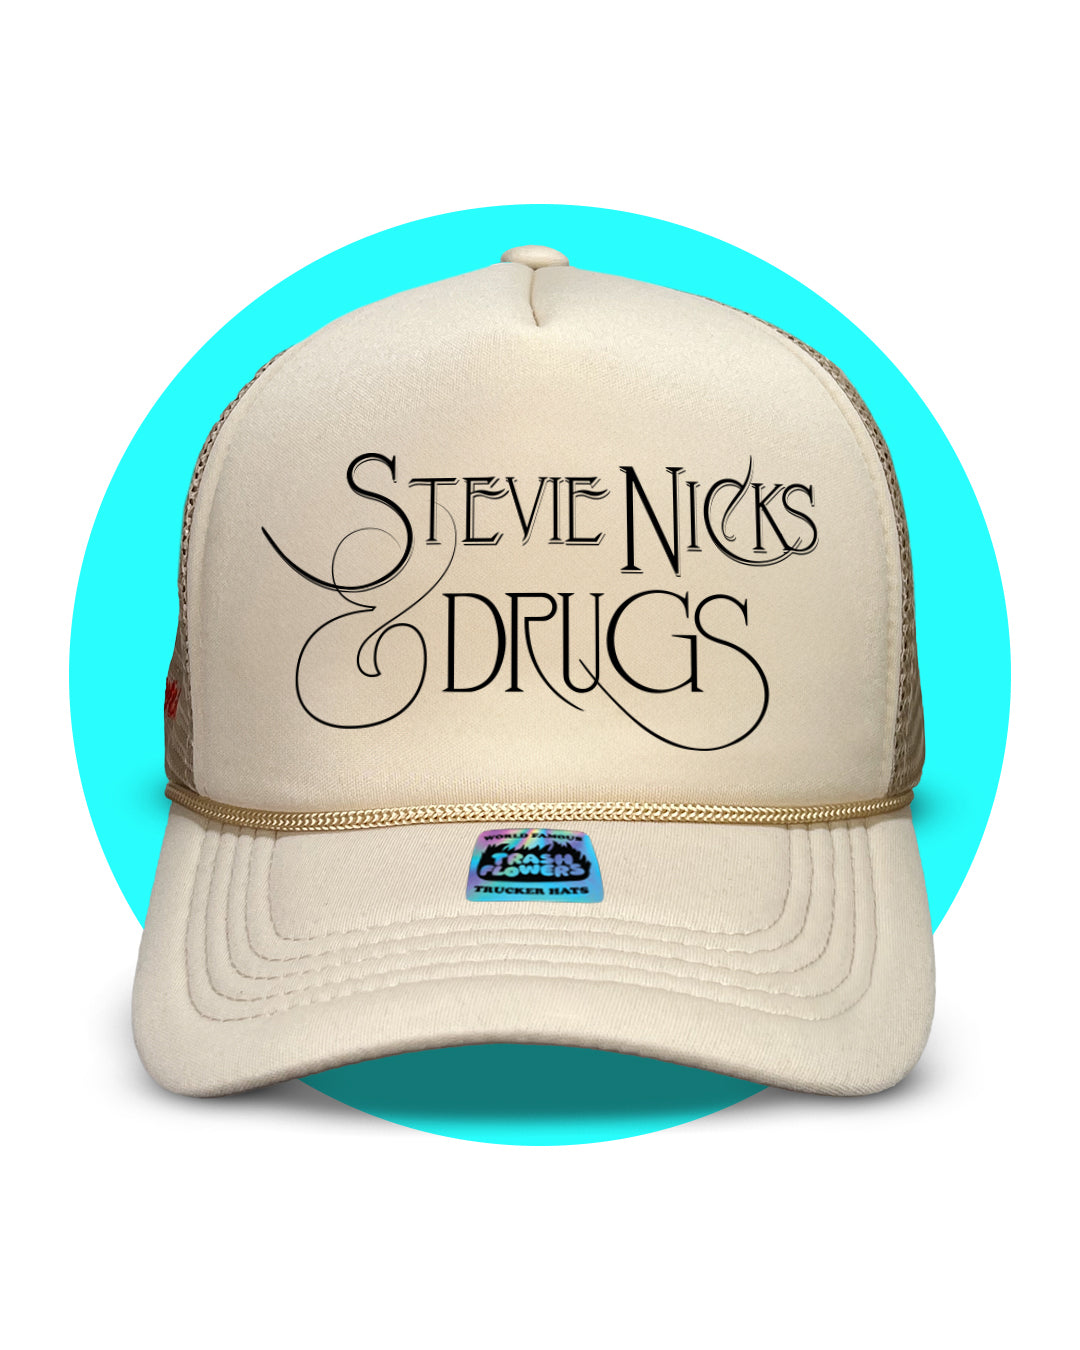 Stevie Nicks & Drugs Trucker Hat